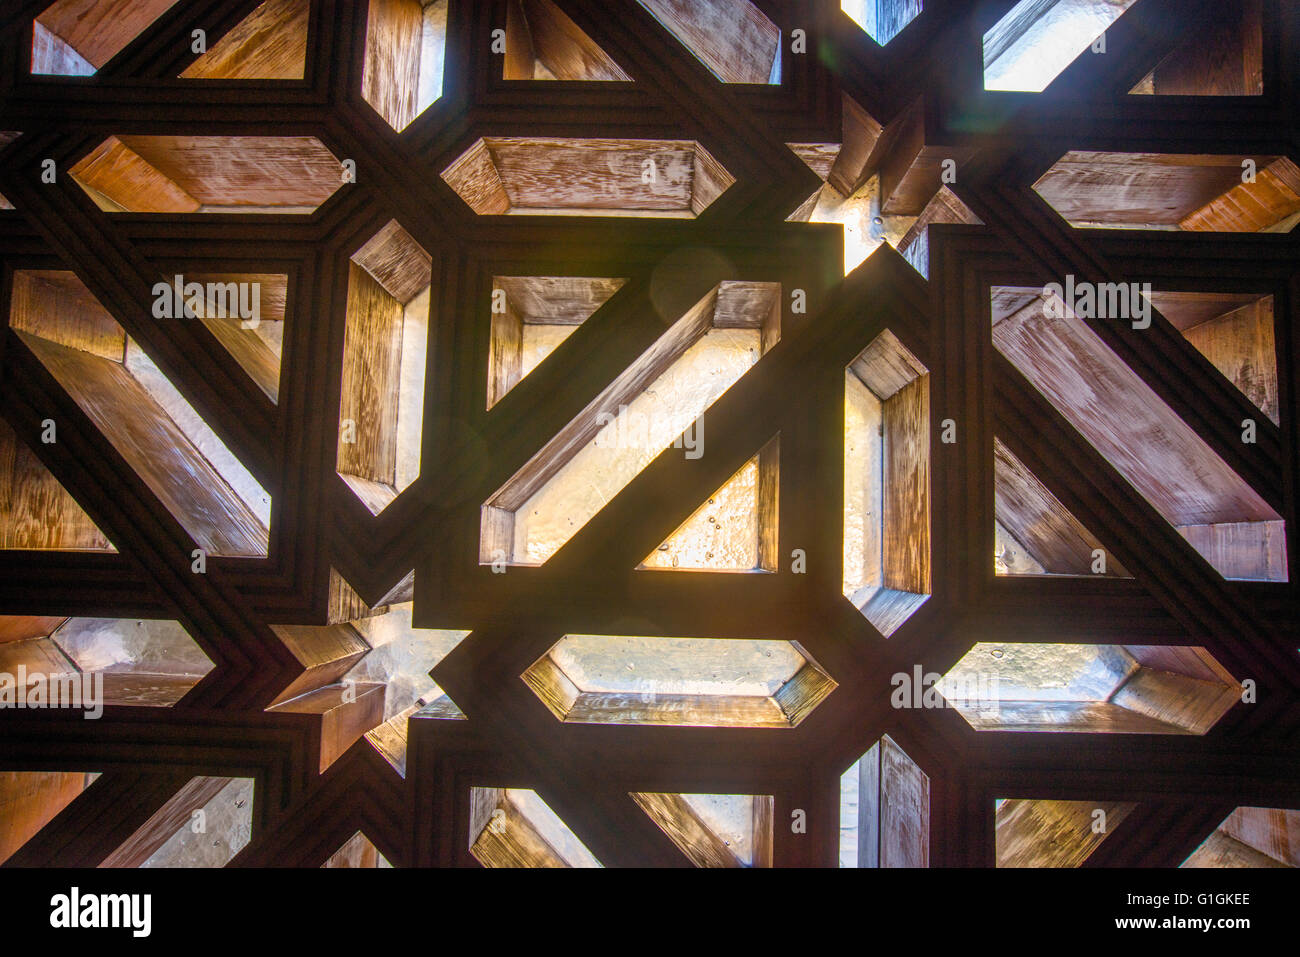 Dekoratives Bild mit arabischem Gitter aus Wengeholz